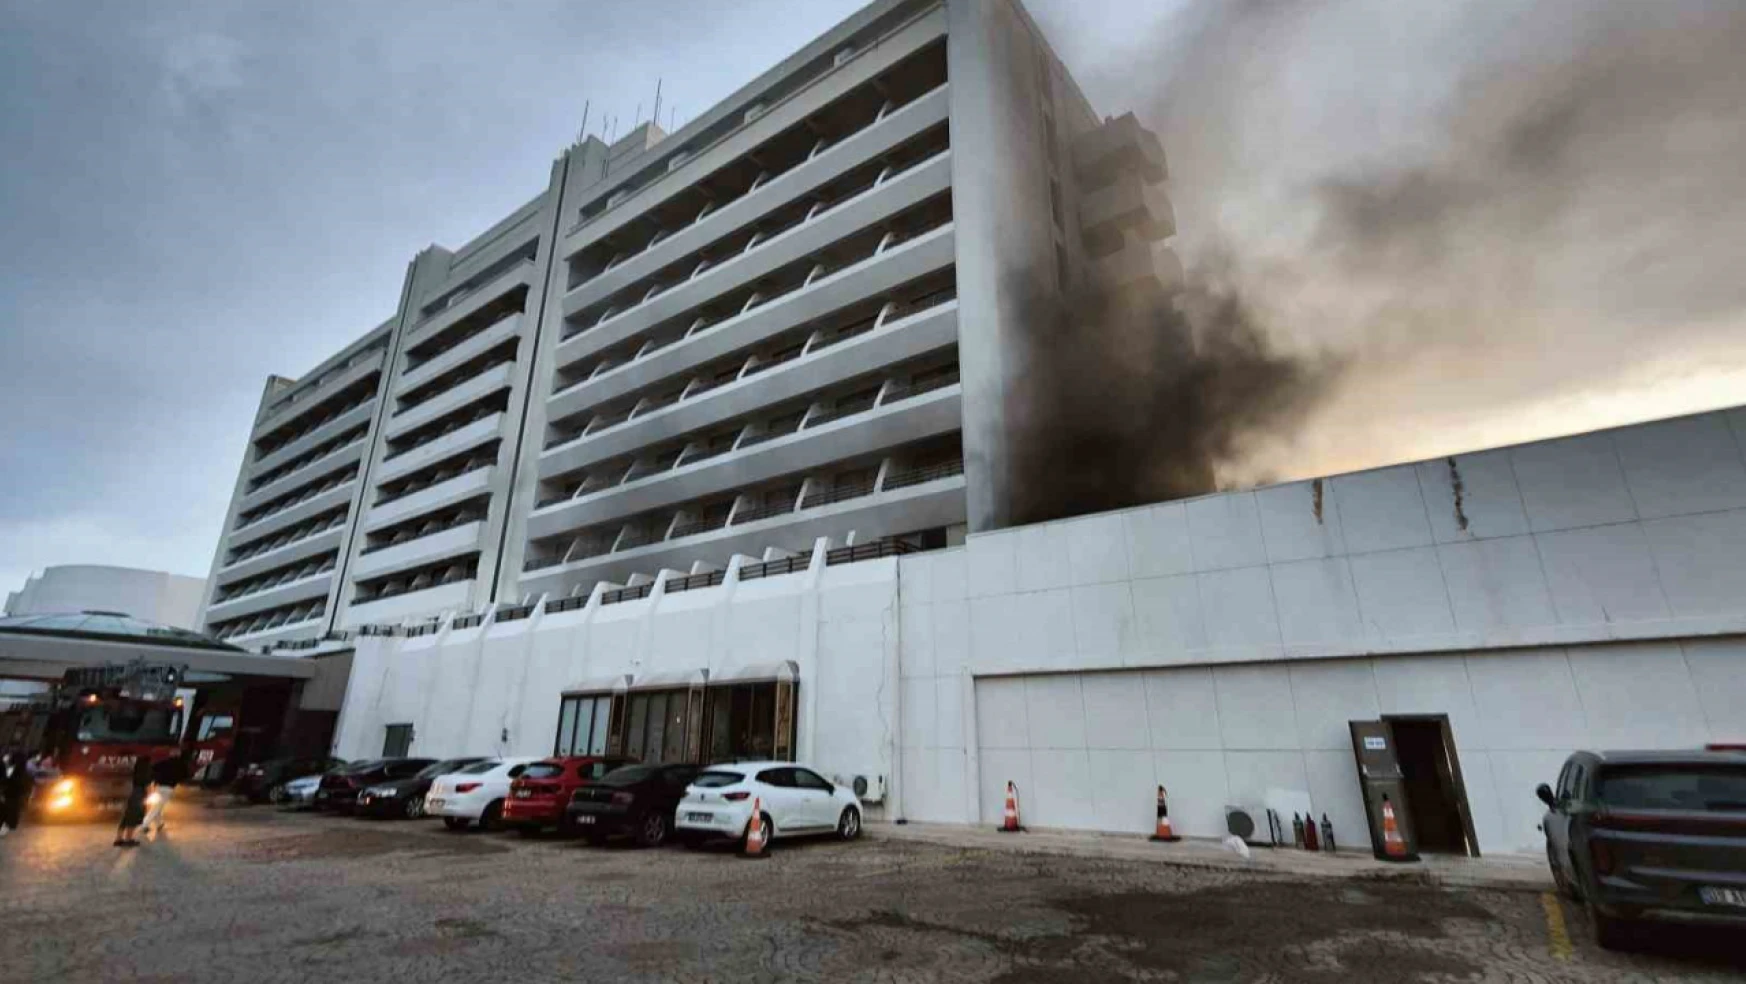 Kuşadası'nda 5 yıldızlı otelde yangın çıktı